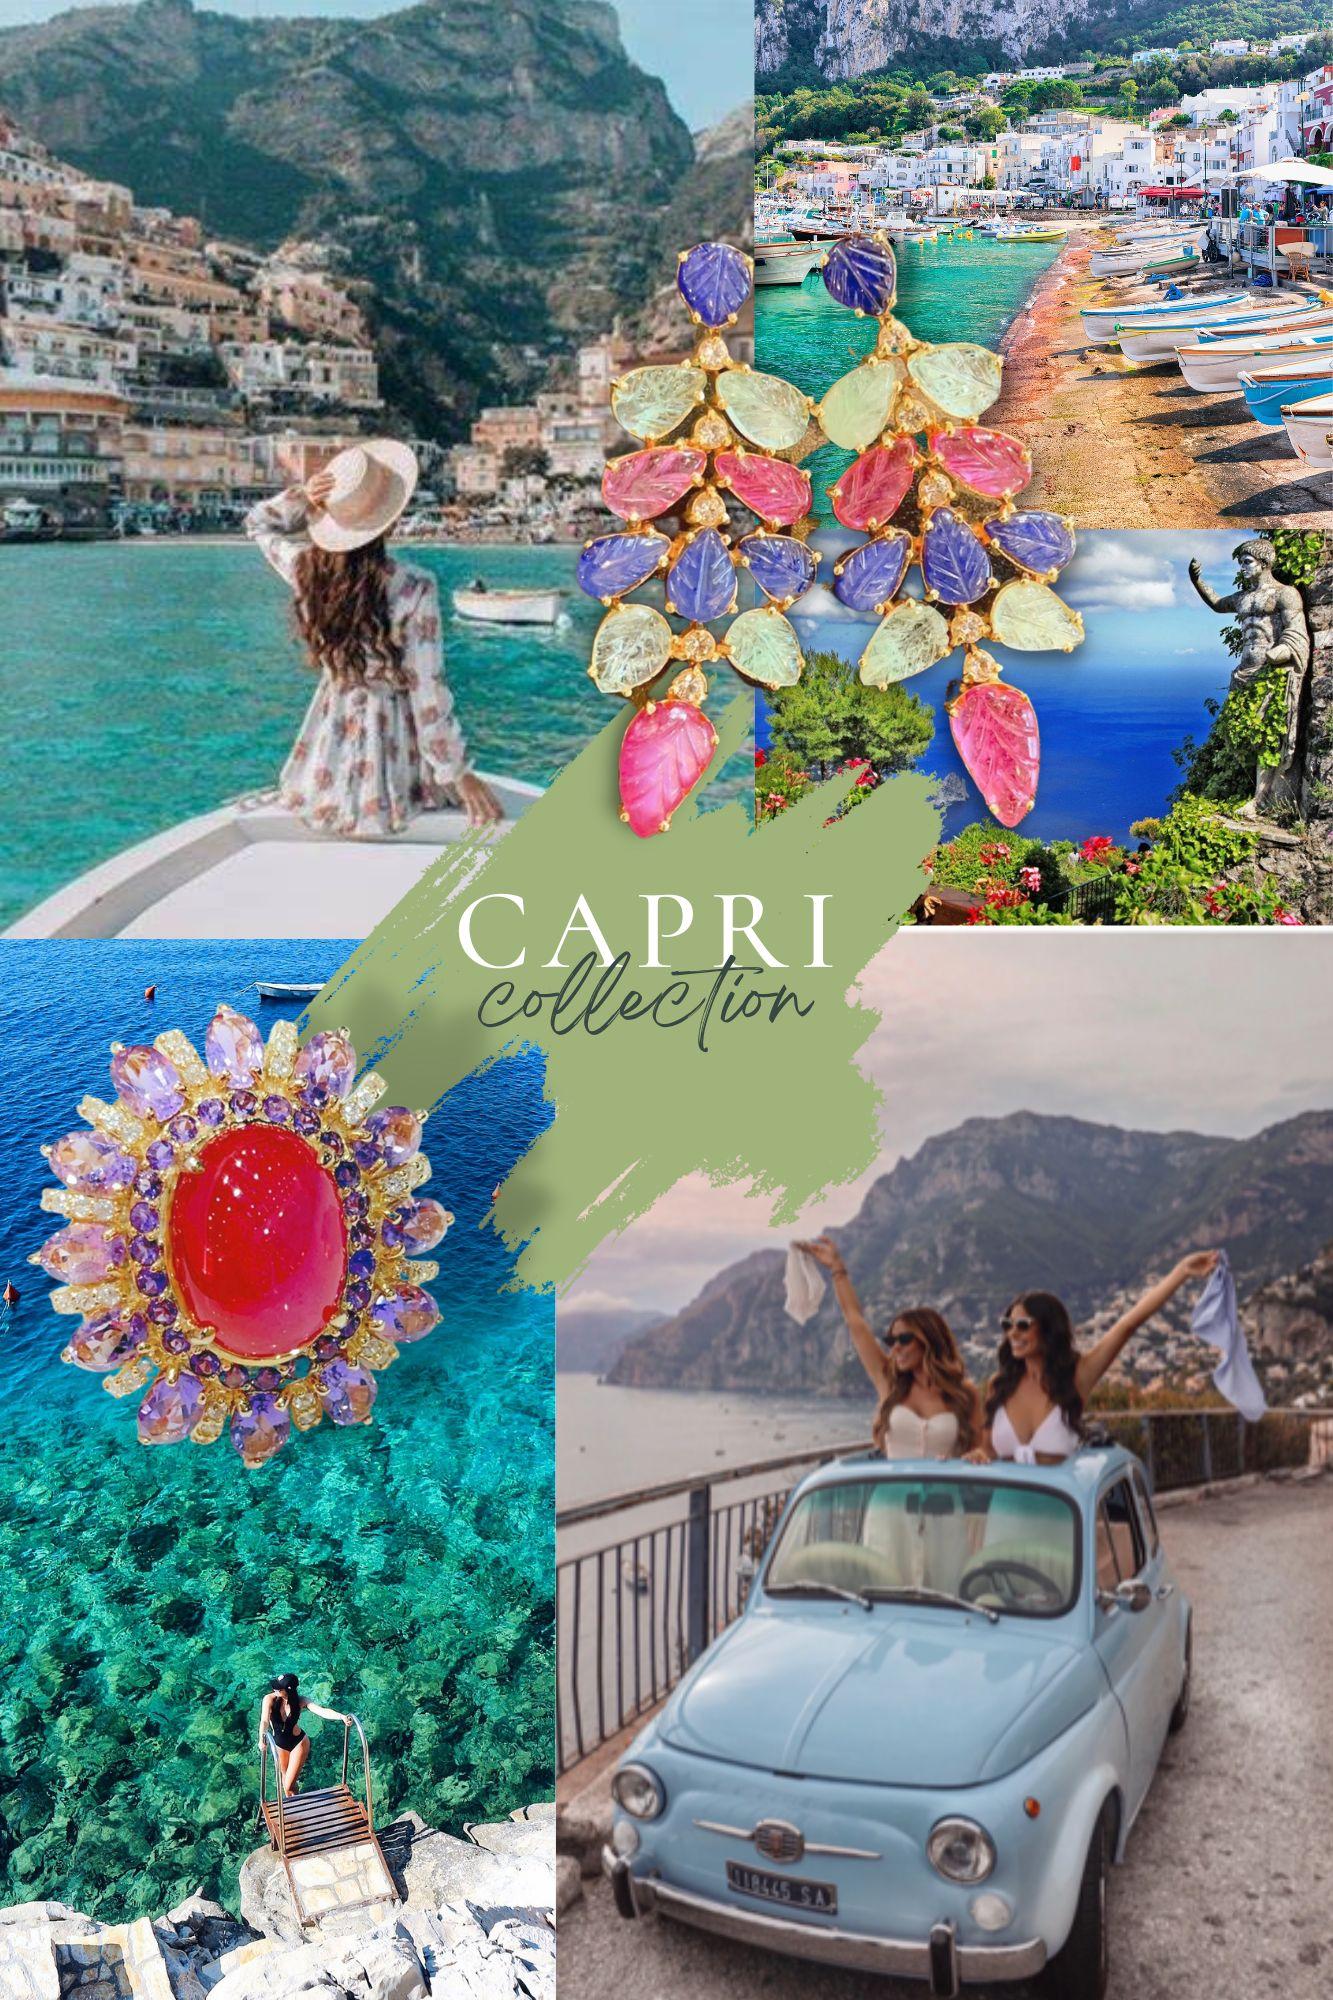 Bochic “Capri” Purple Amethyst, Blue Topaz Earrings Set in 22k Gold & Silver For Sale 1